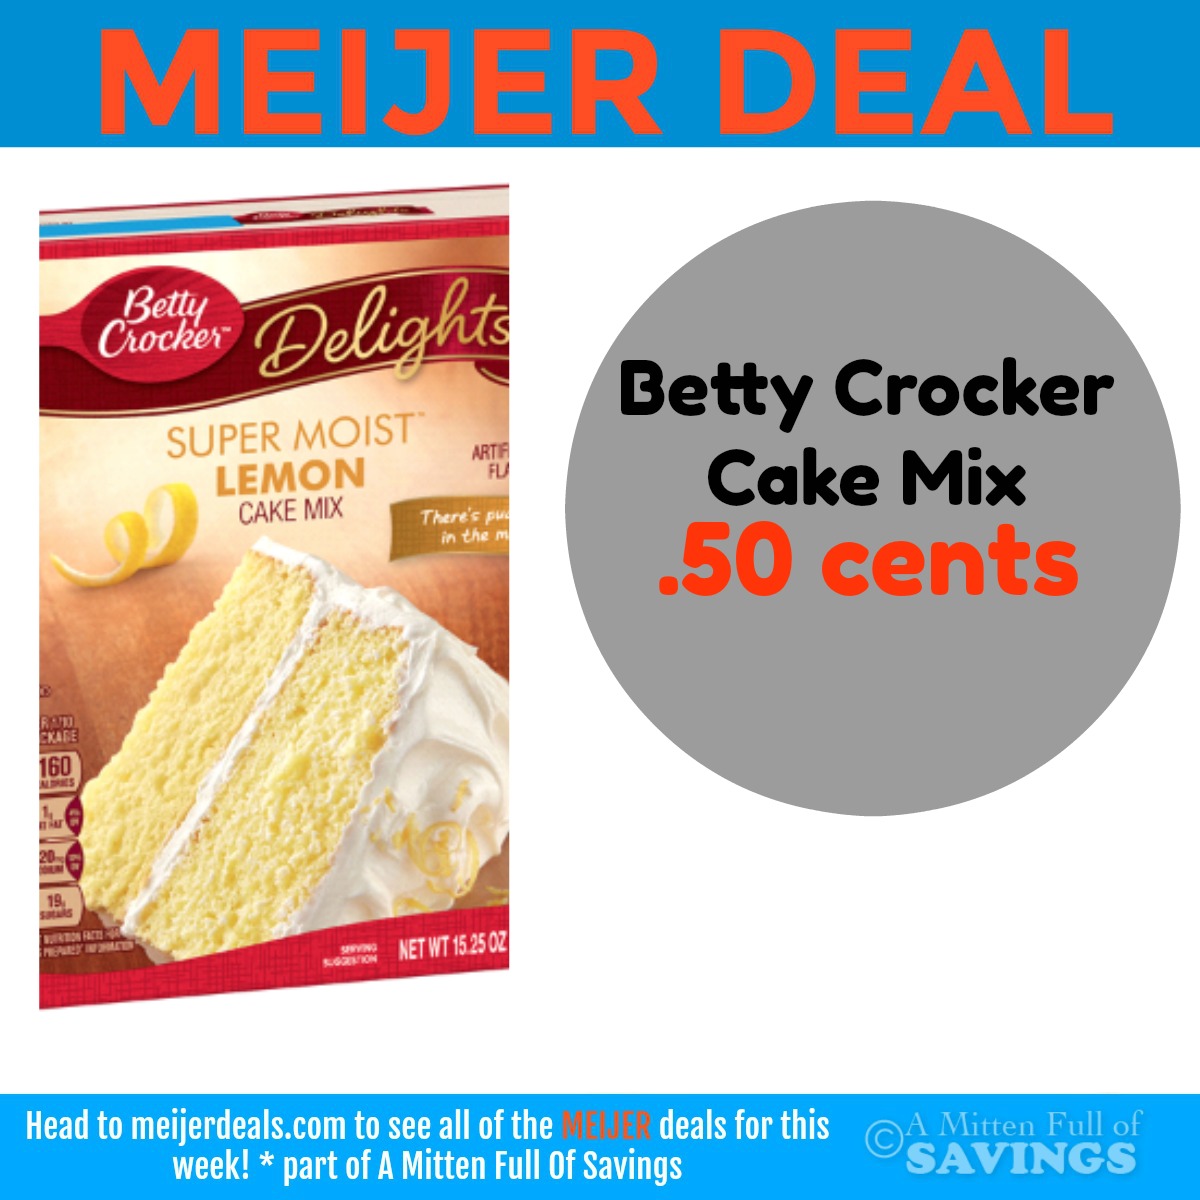 Betty Crocker Cake Mix Deal